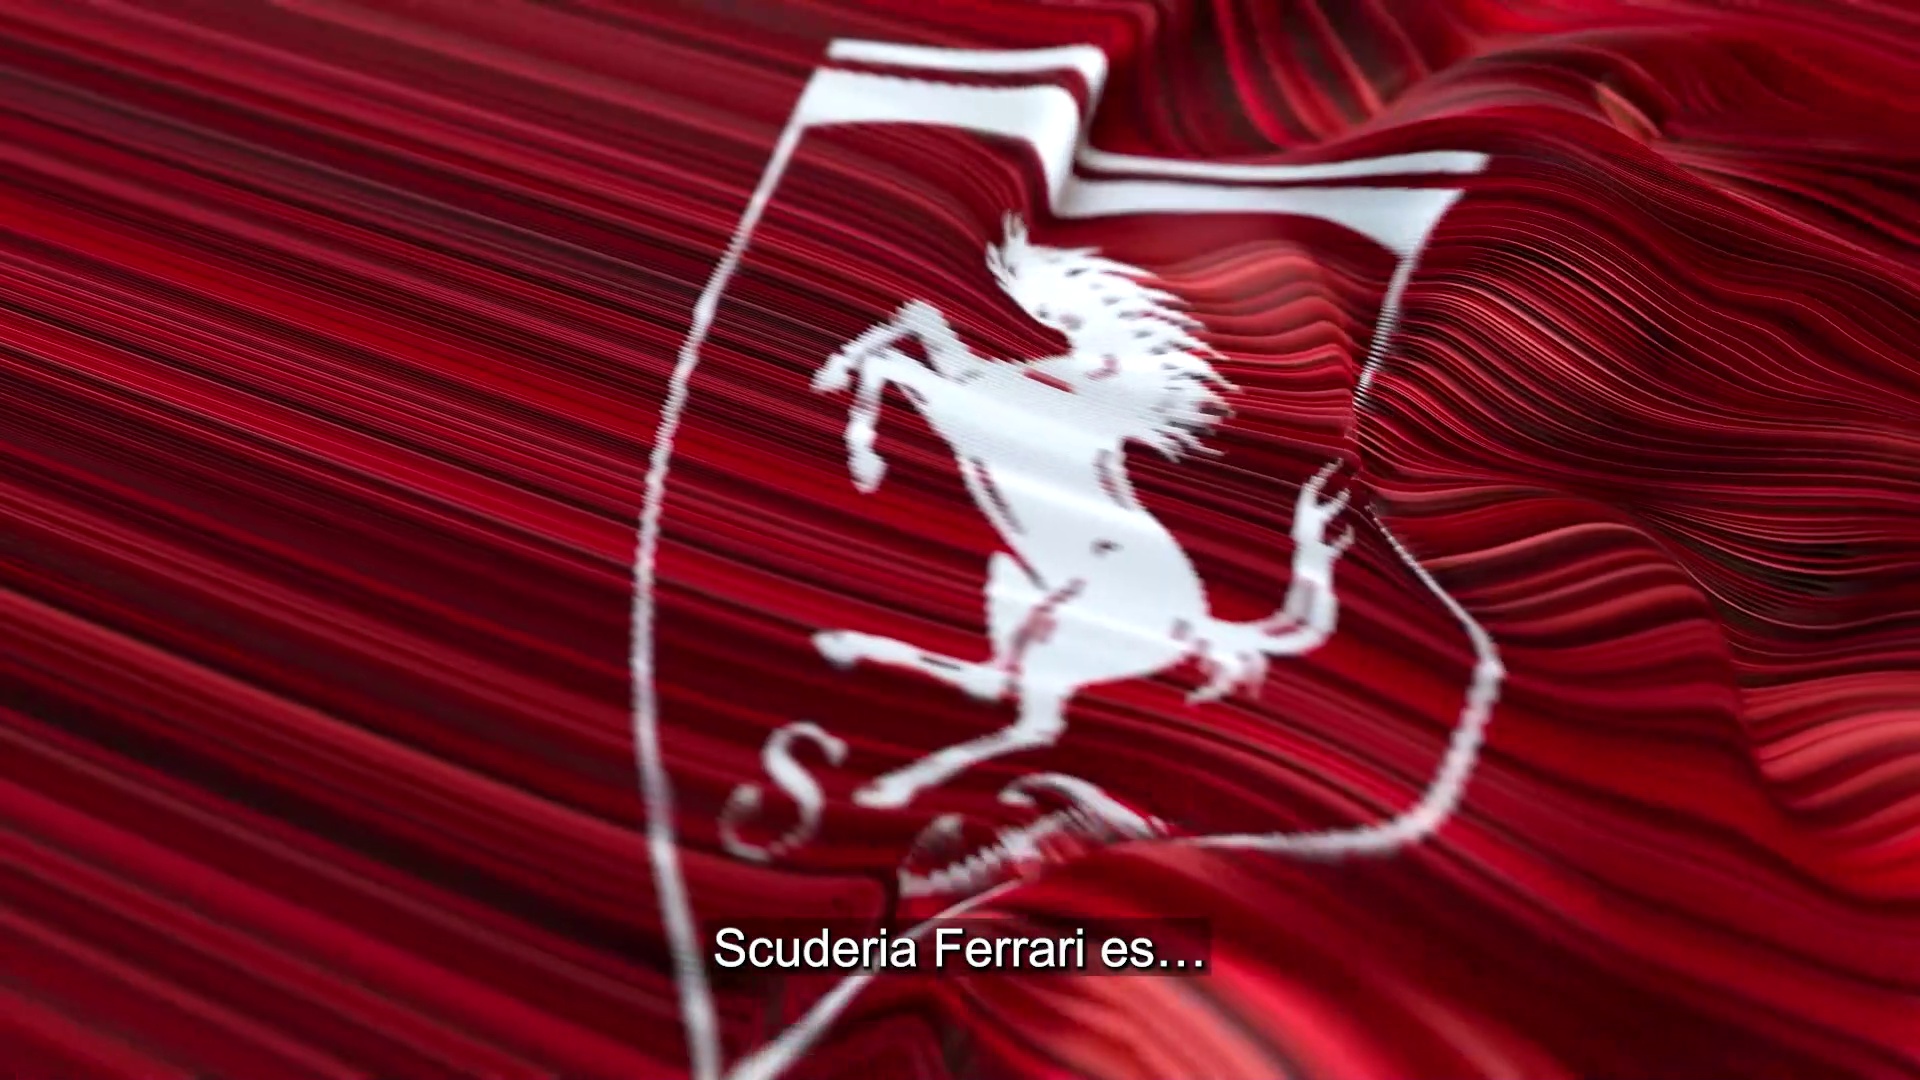 El Banco Santander vuelve a patrocinar a Ferrari en F1Ferrari F1: Sainz y Leclerc, a conquista del título -- F1 --